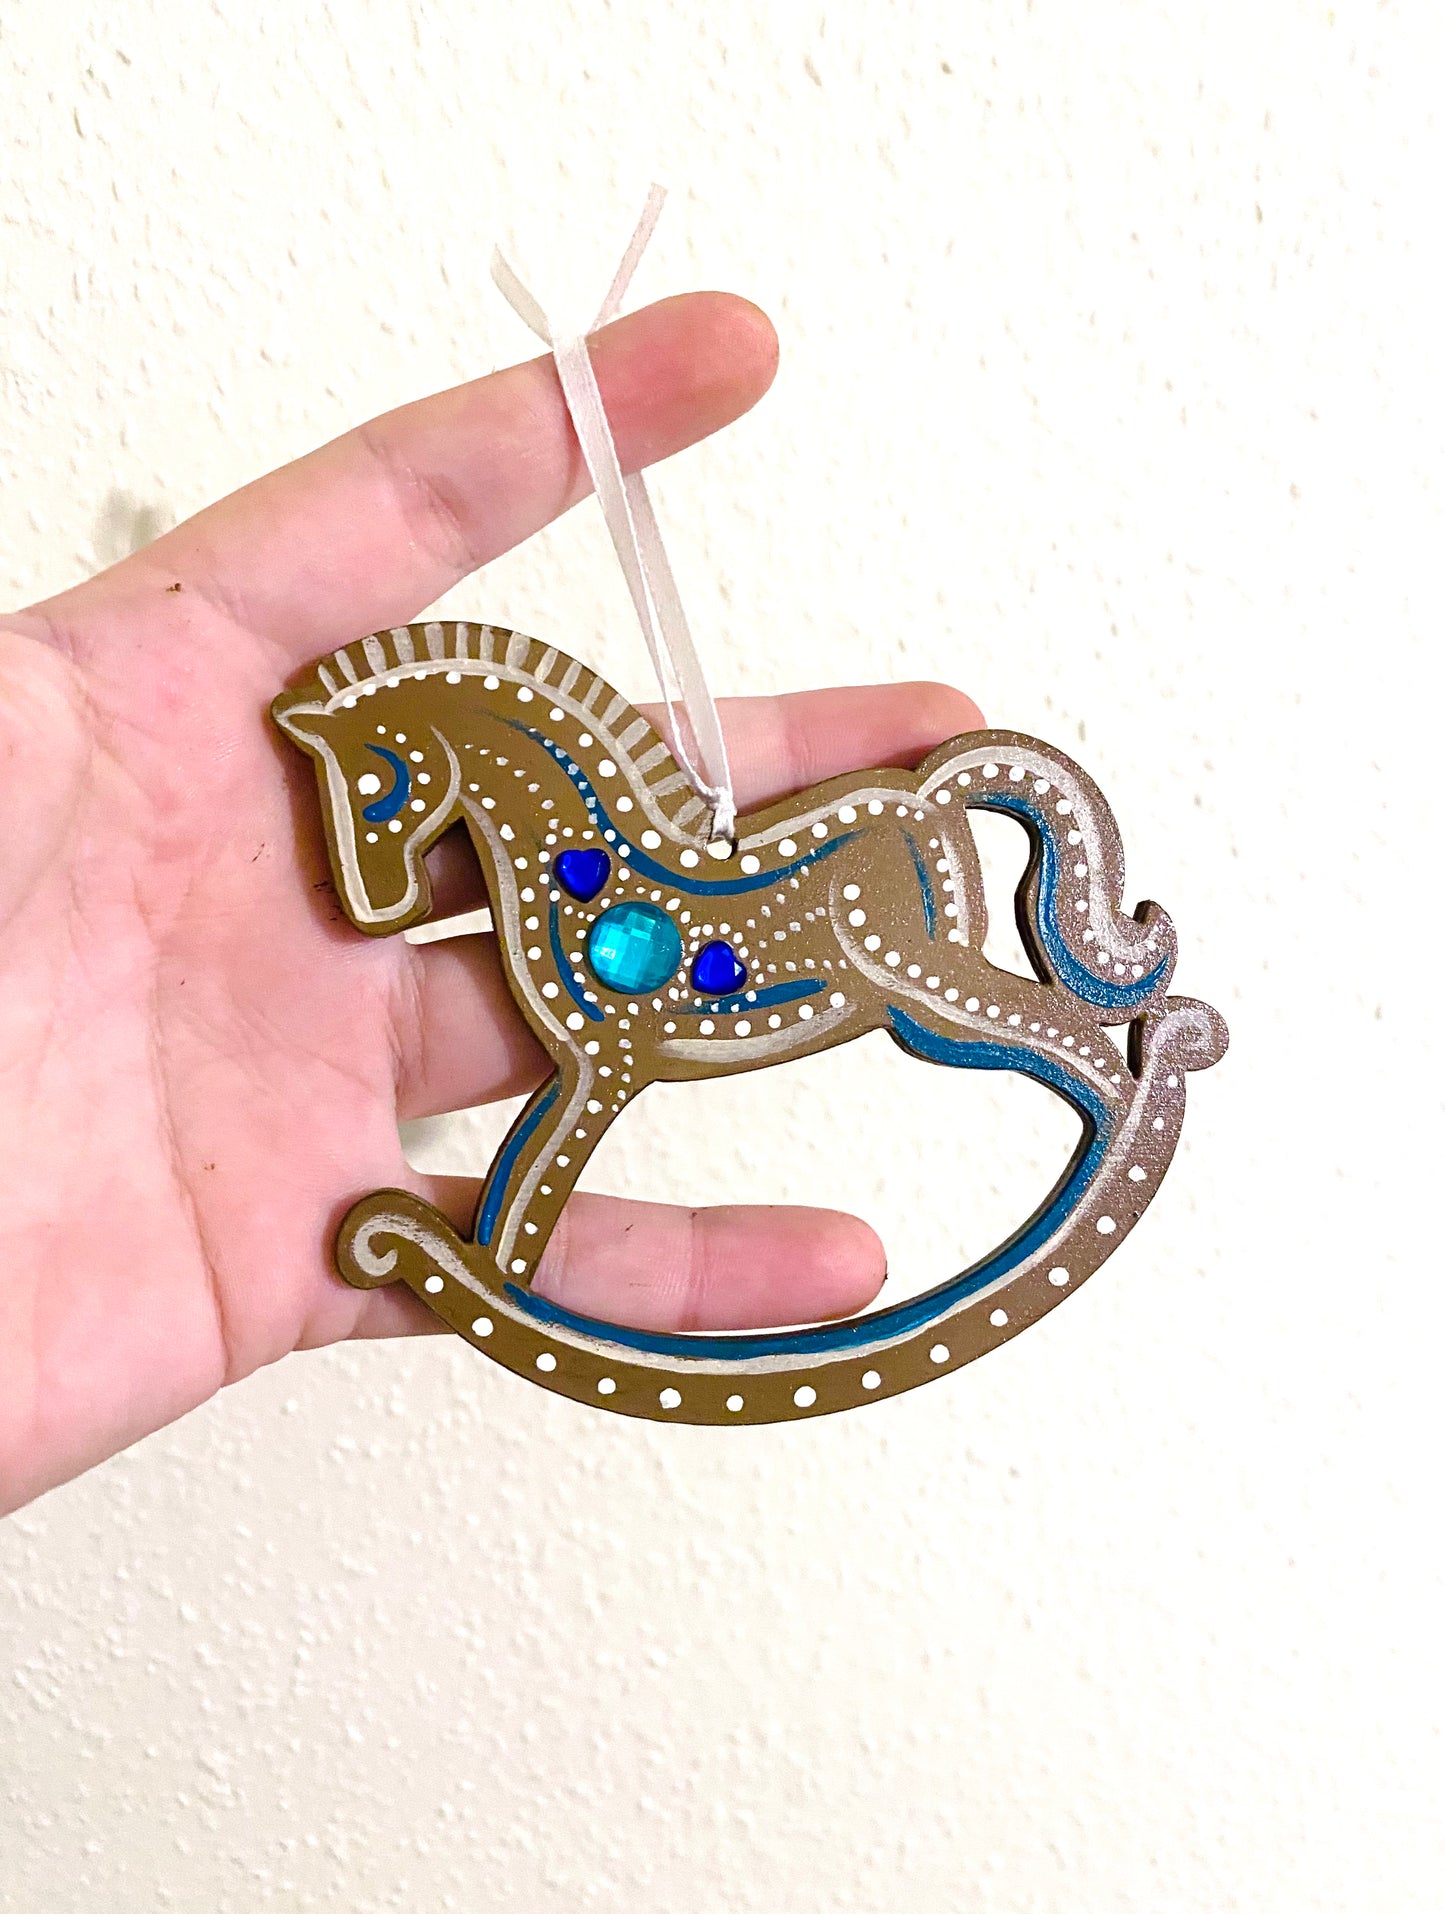 Hand-painted “gingerbread” rocking horse ornament / Kézzel festett “mézeskalács” hintaló dísz